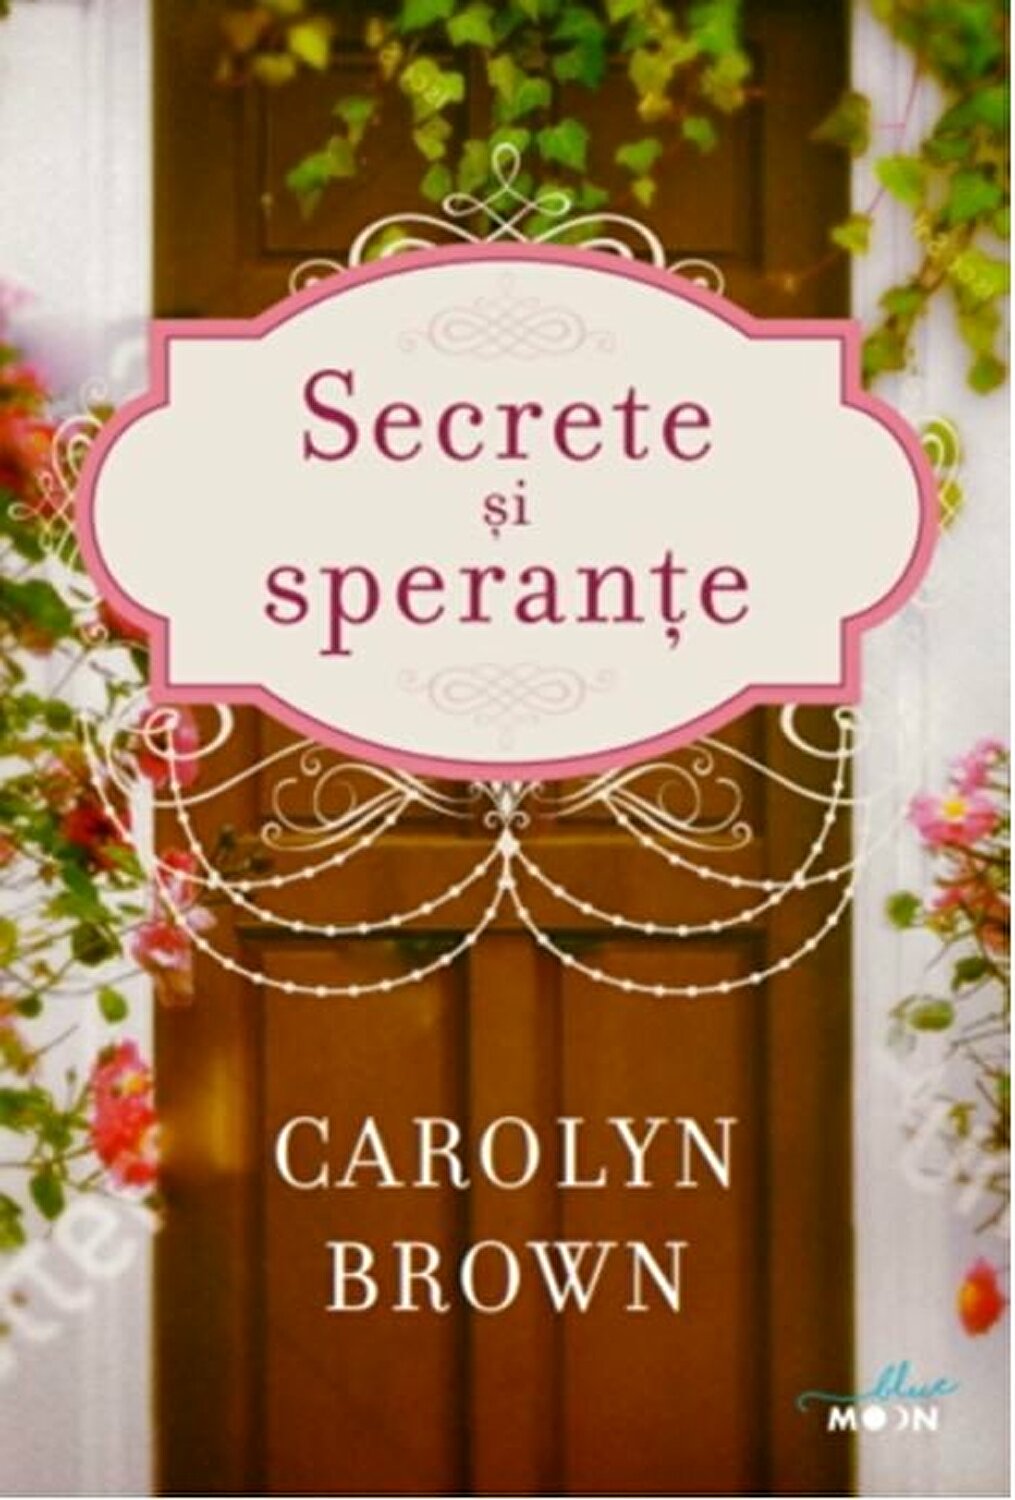 Secrete si sperante | Carolyn Brown carturesti.ro imagine 2022